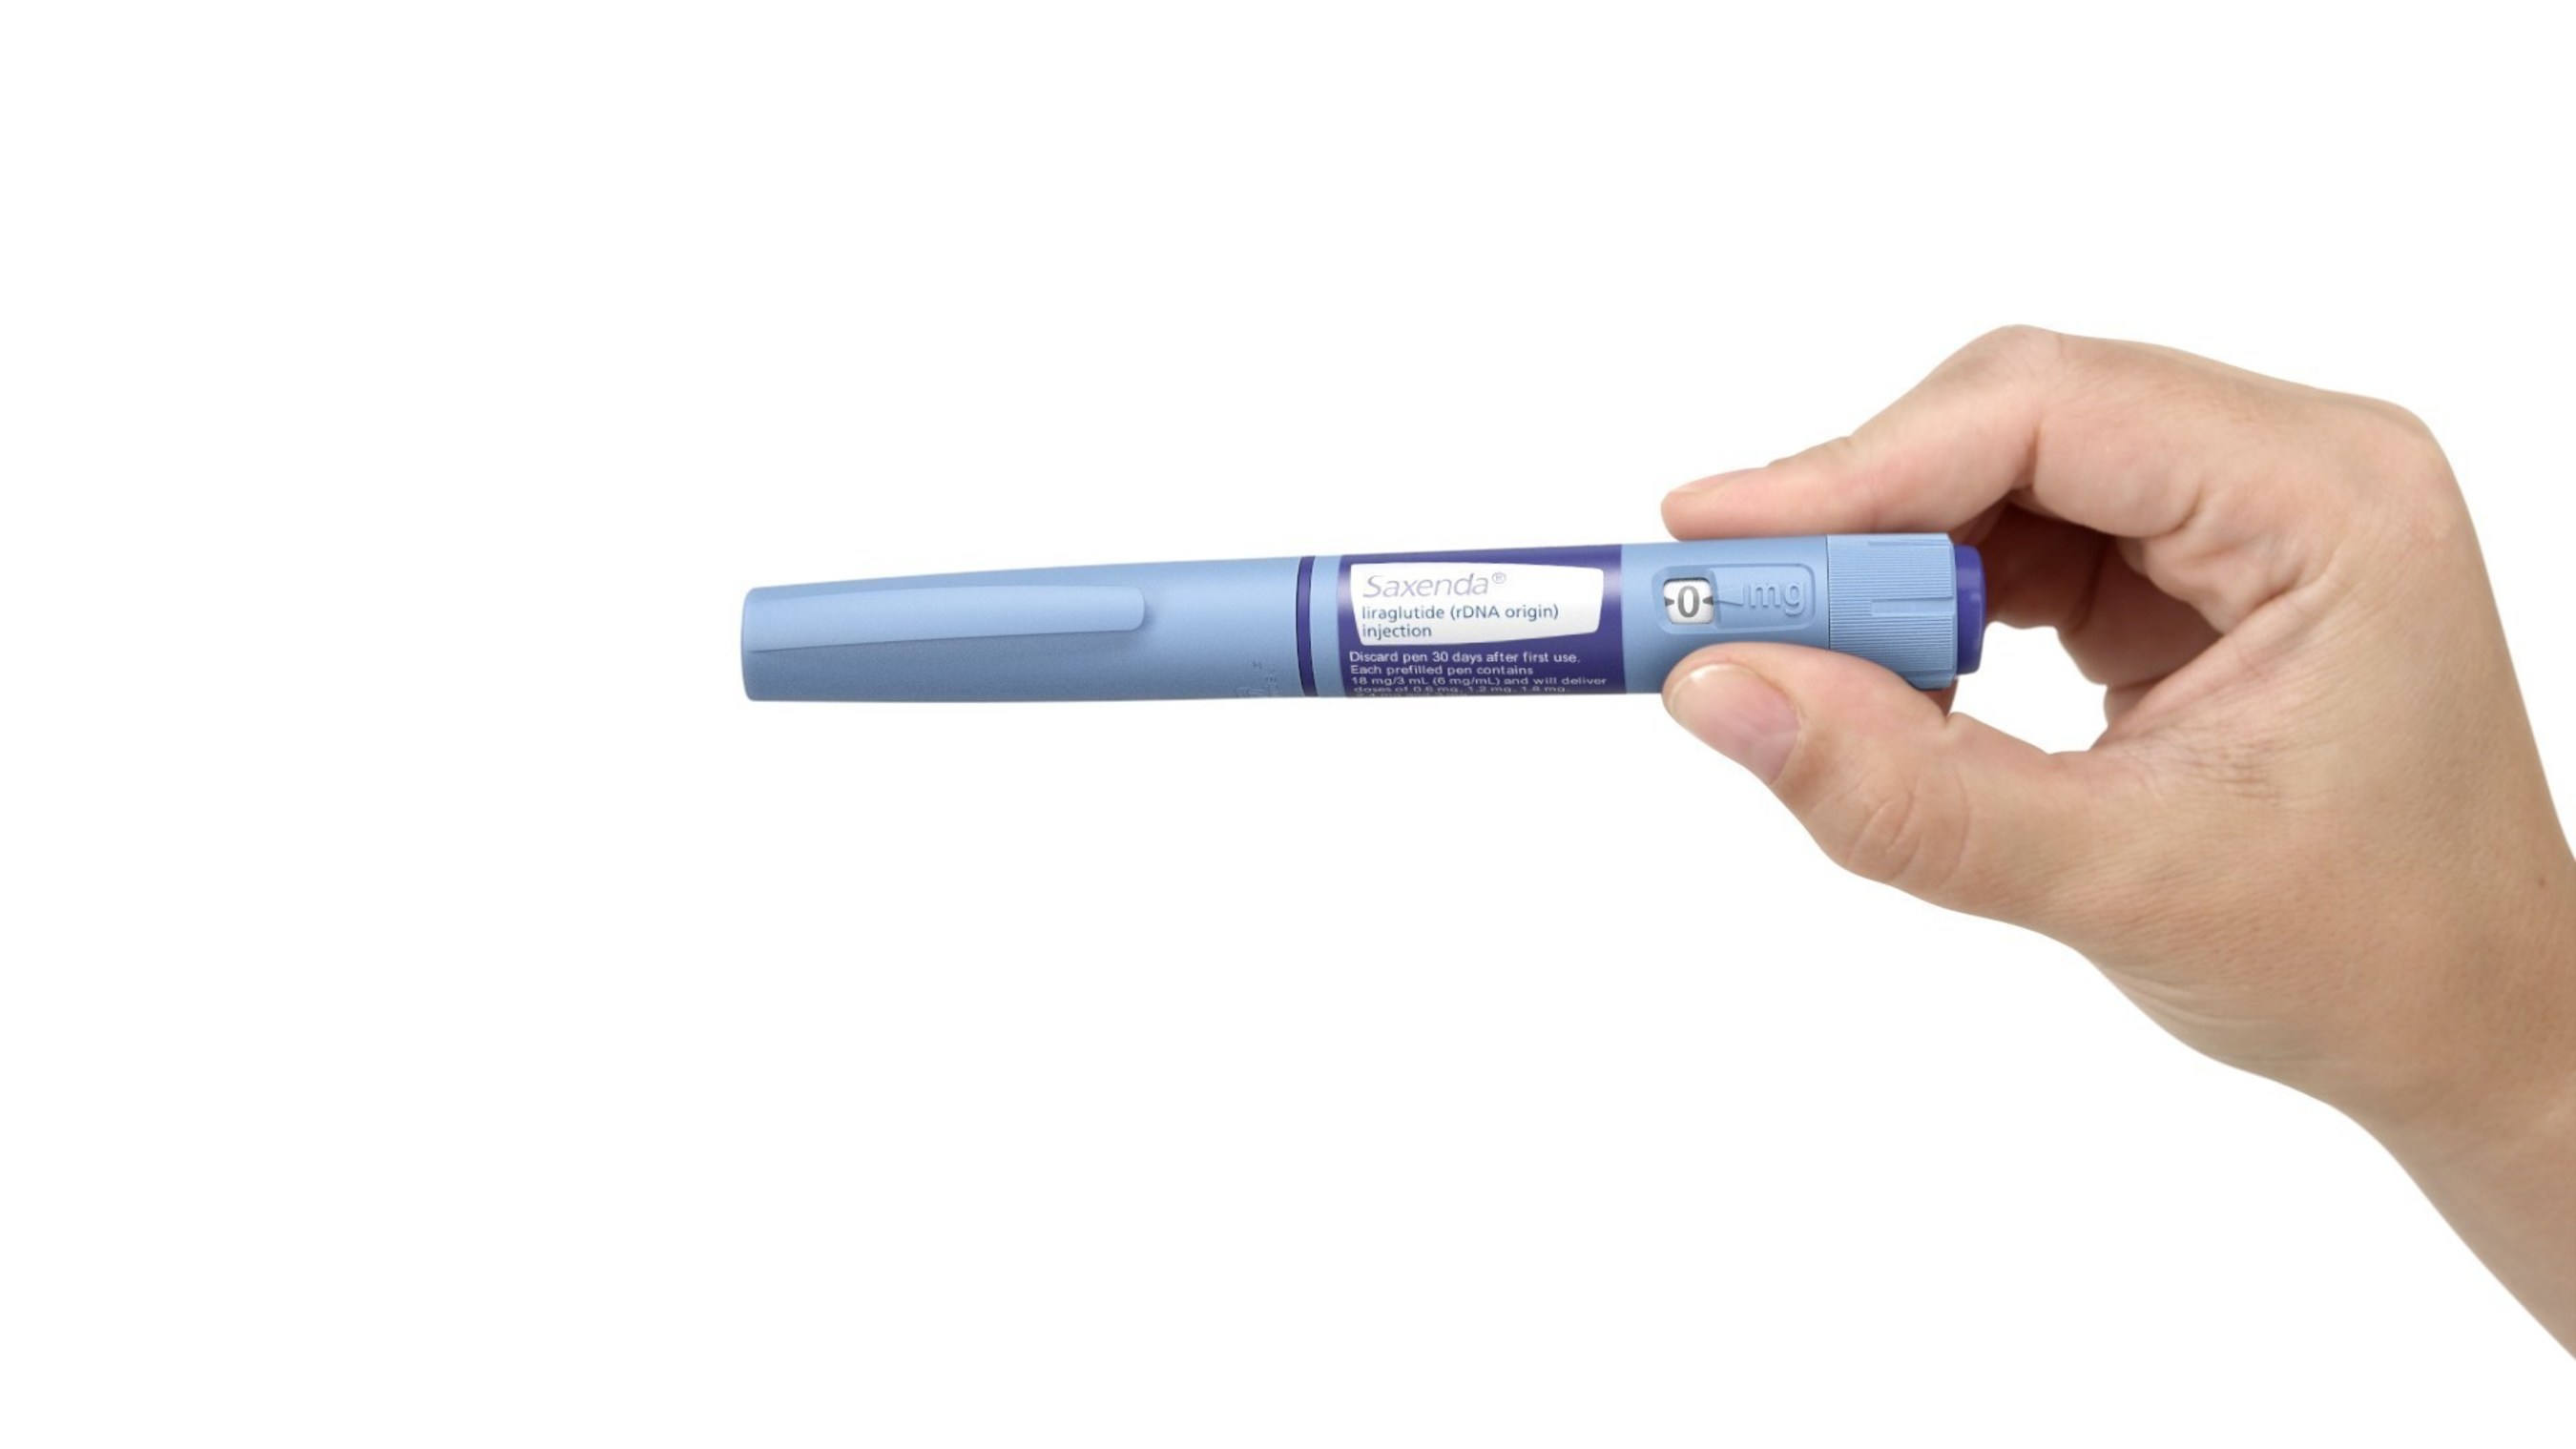 Saxenda(R) (liraglutide [rDNA origin] injection) pen. Please see full Prescribing Information, including Boxed Warning, for Saxenda(R)  at Saxenda.com